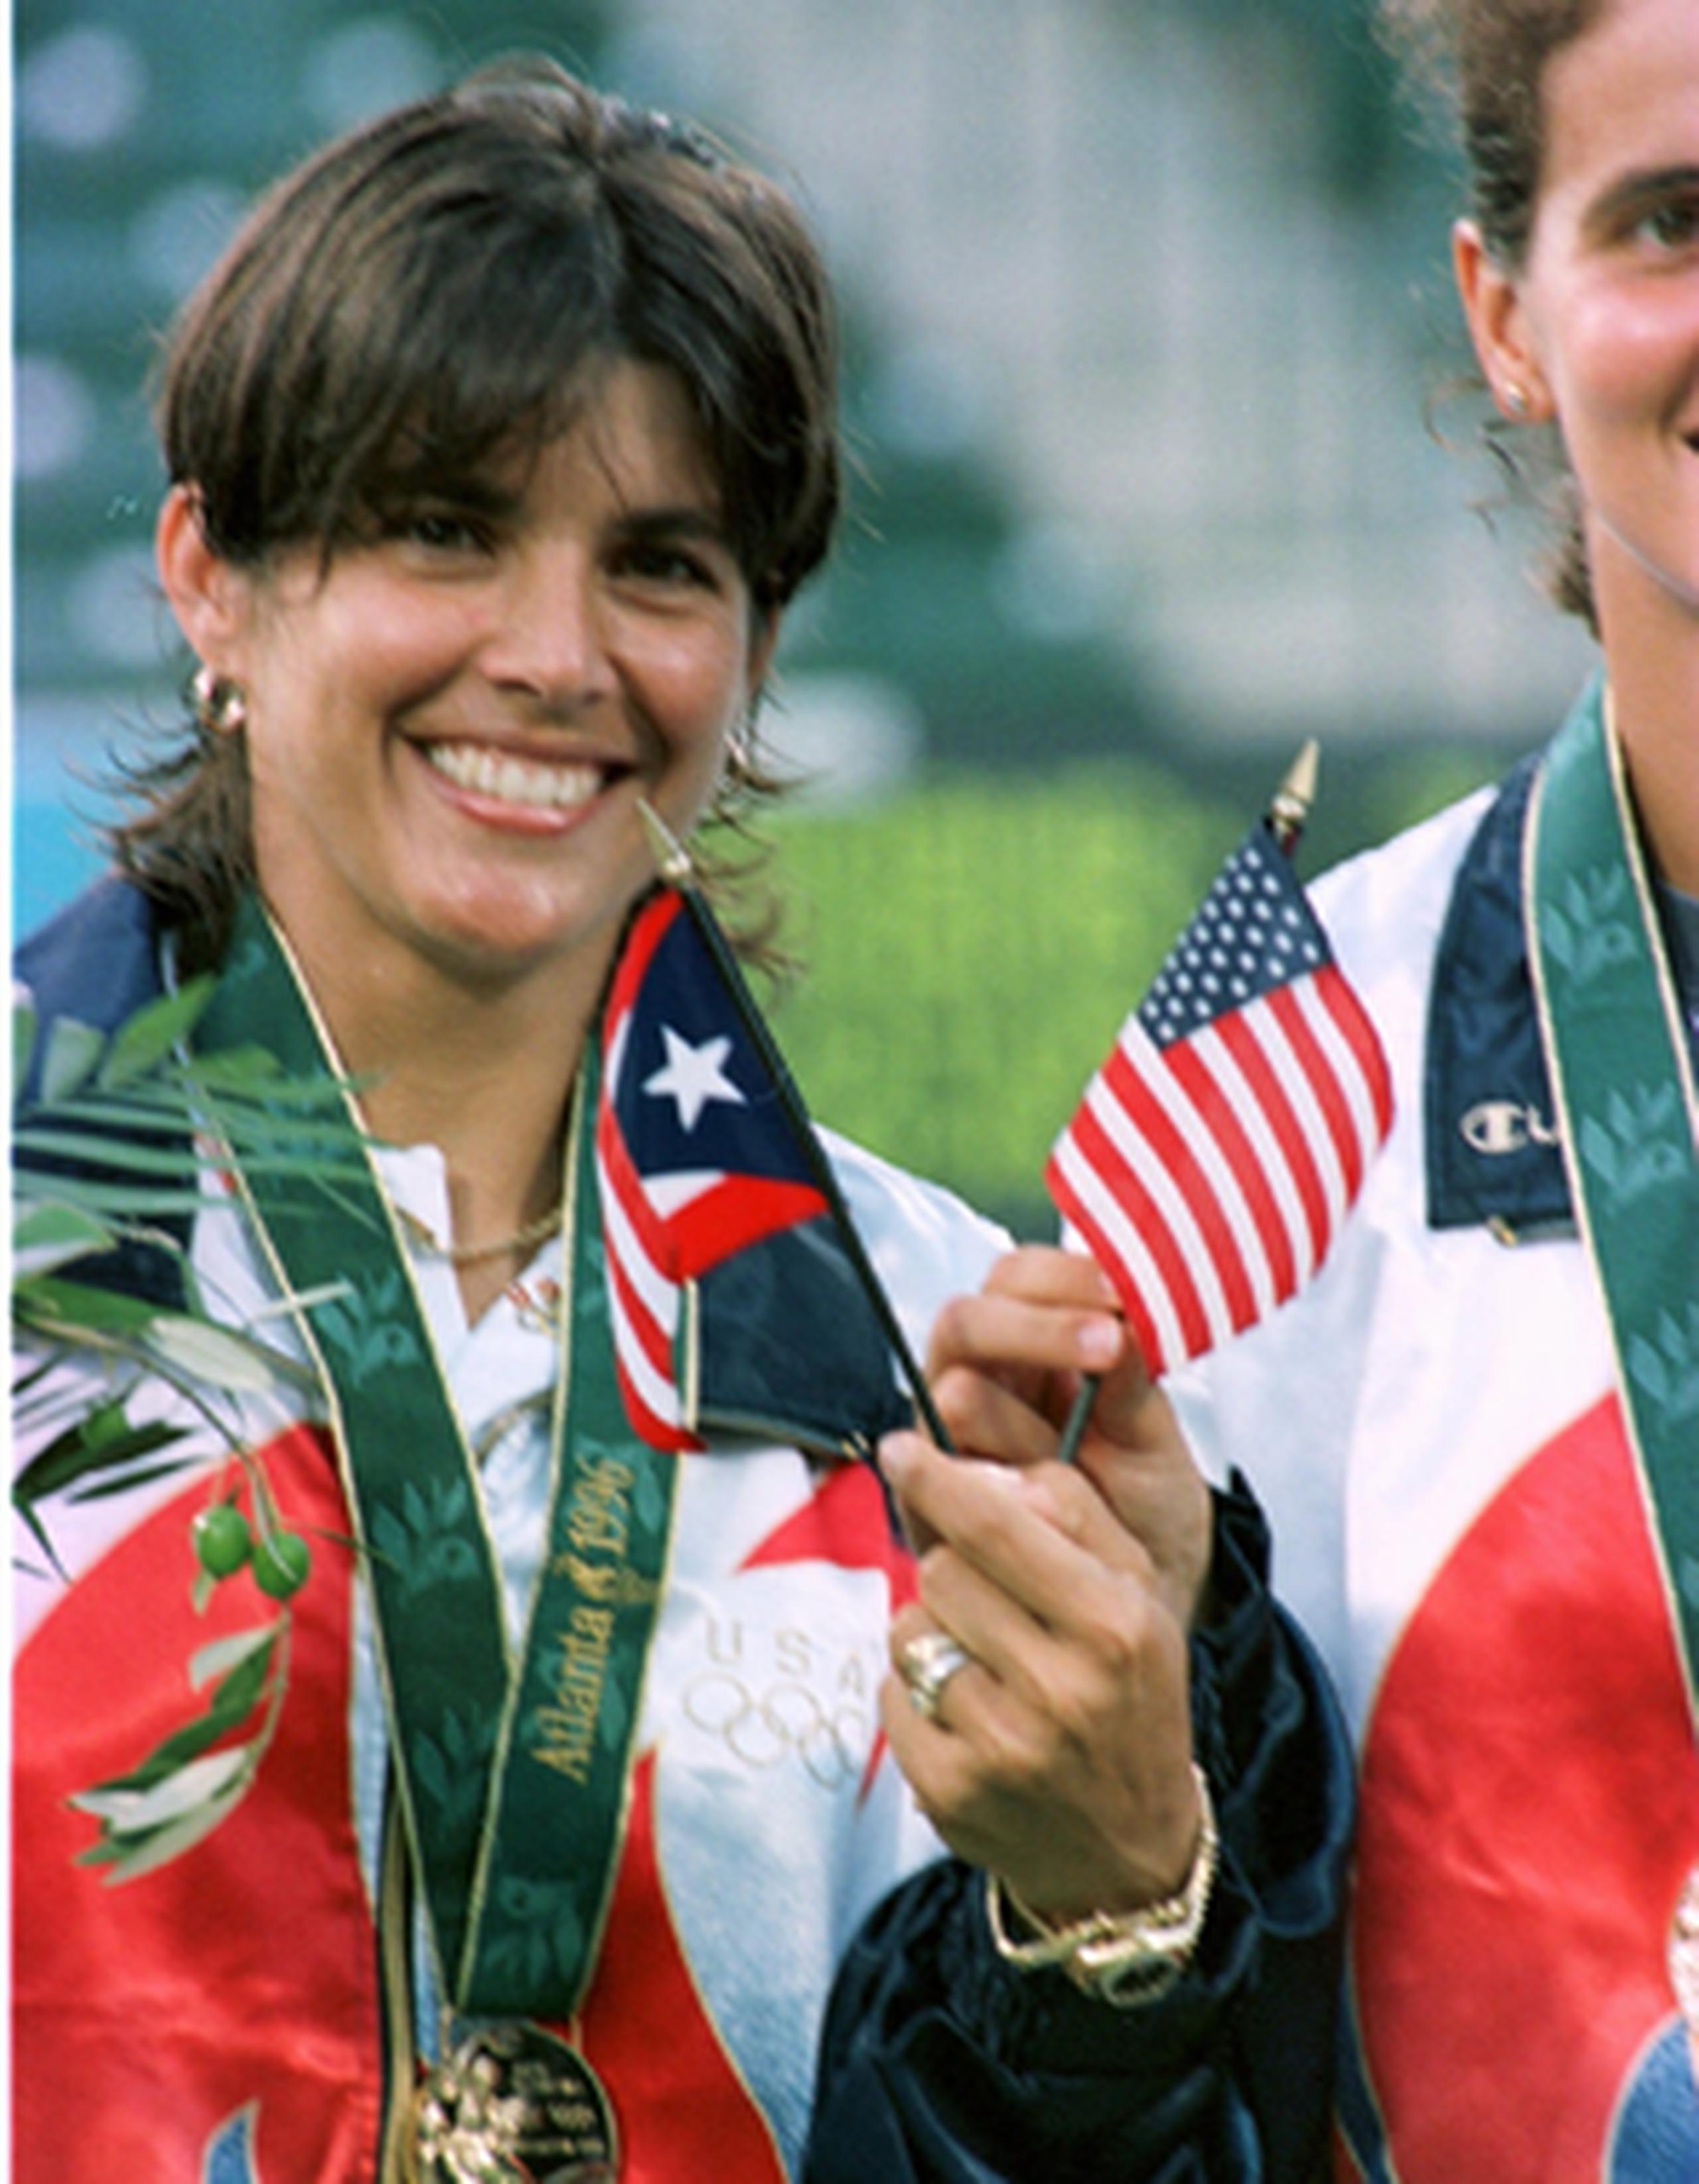 Para Fernández fue su segunda presea dorada representando a Estados Unidos en unas olimpiadas. (Archivo)